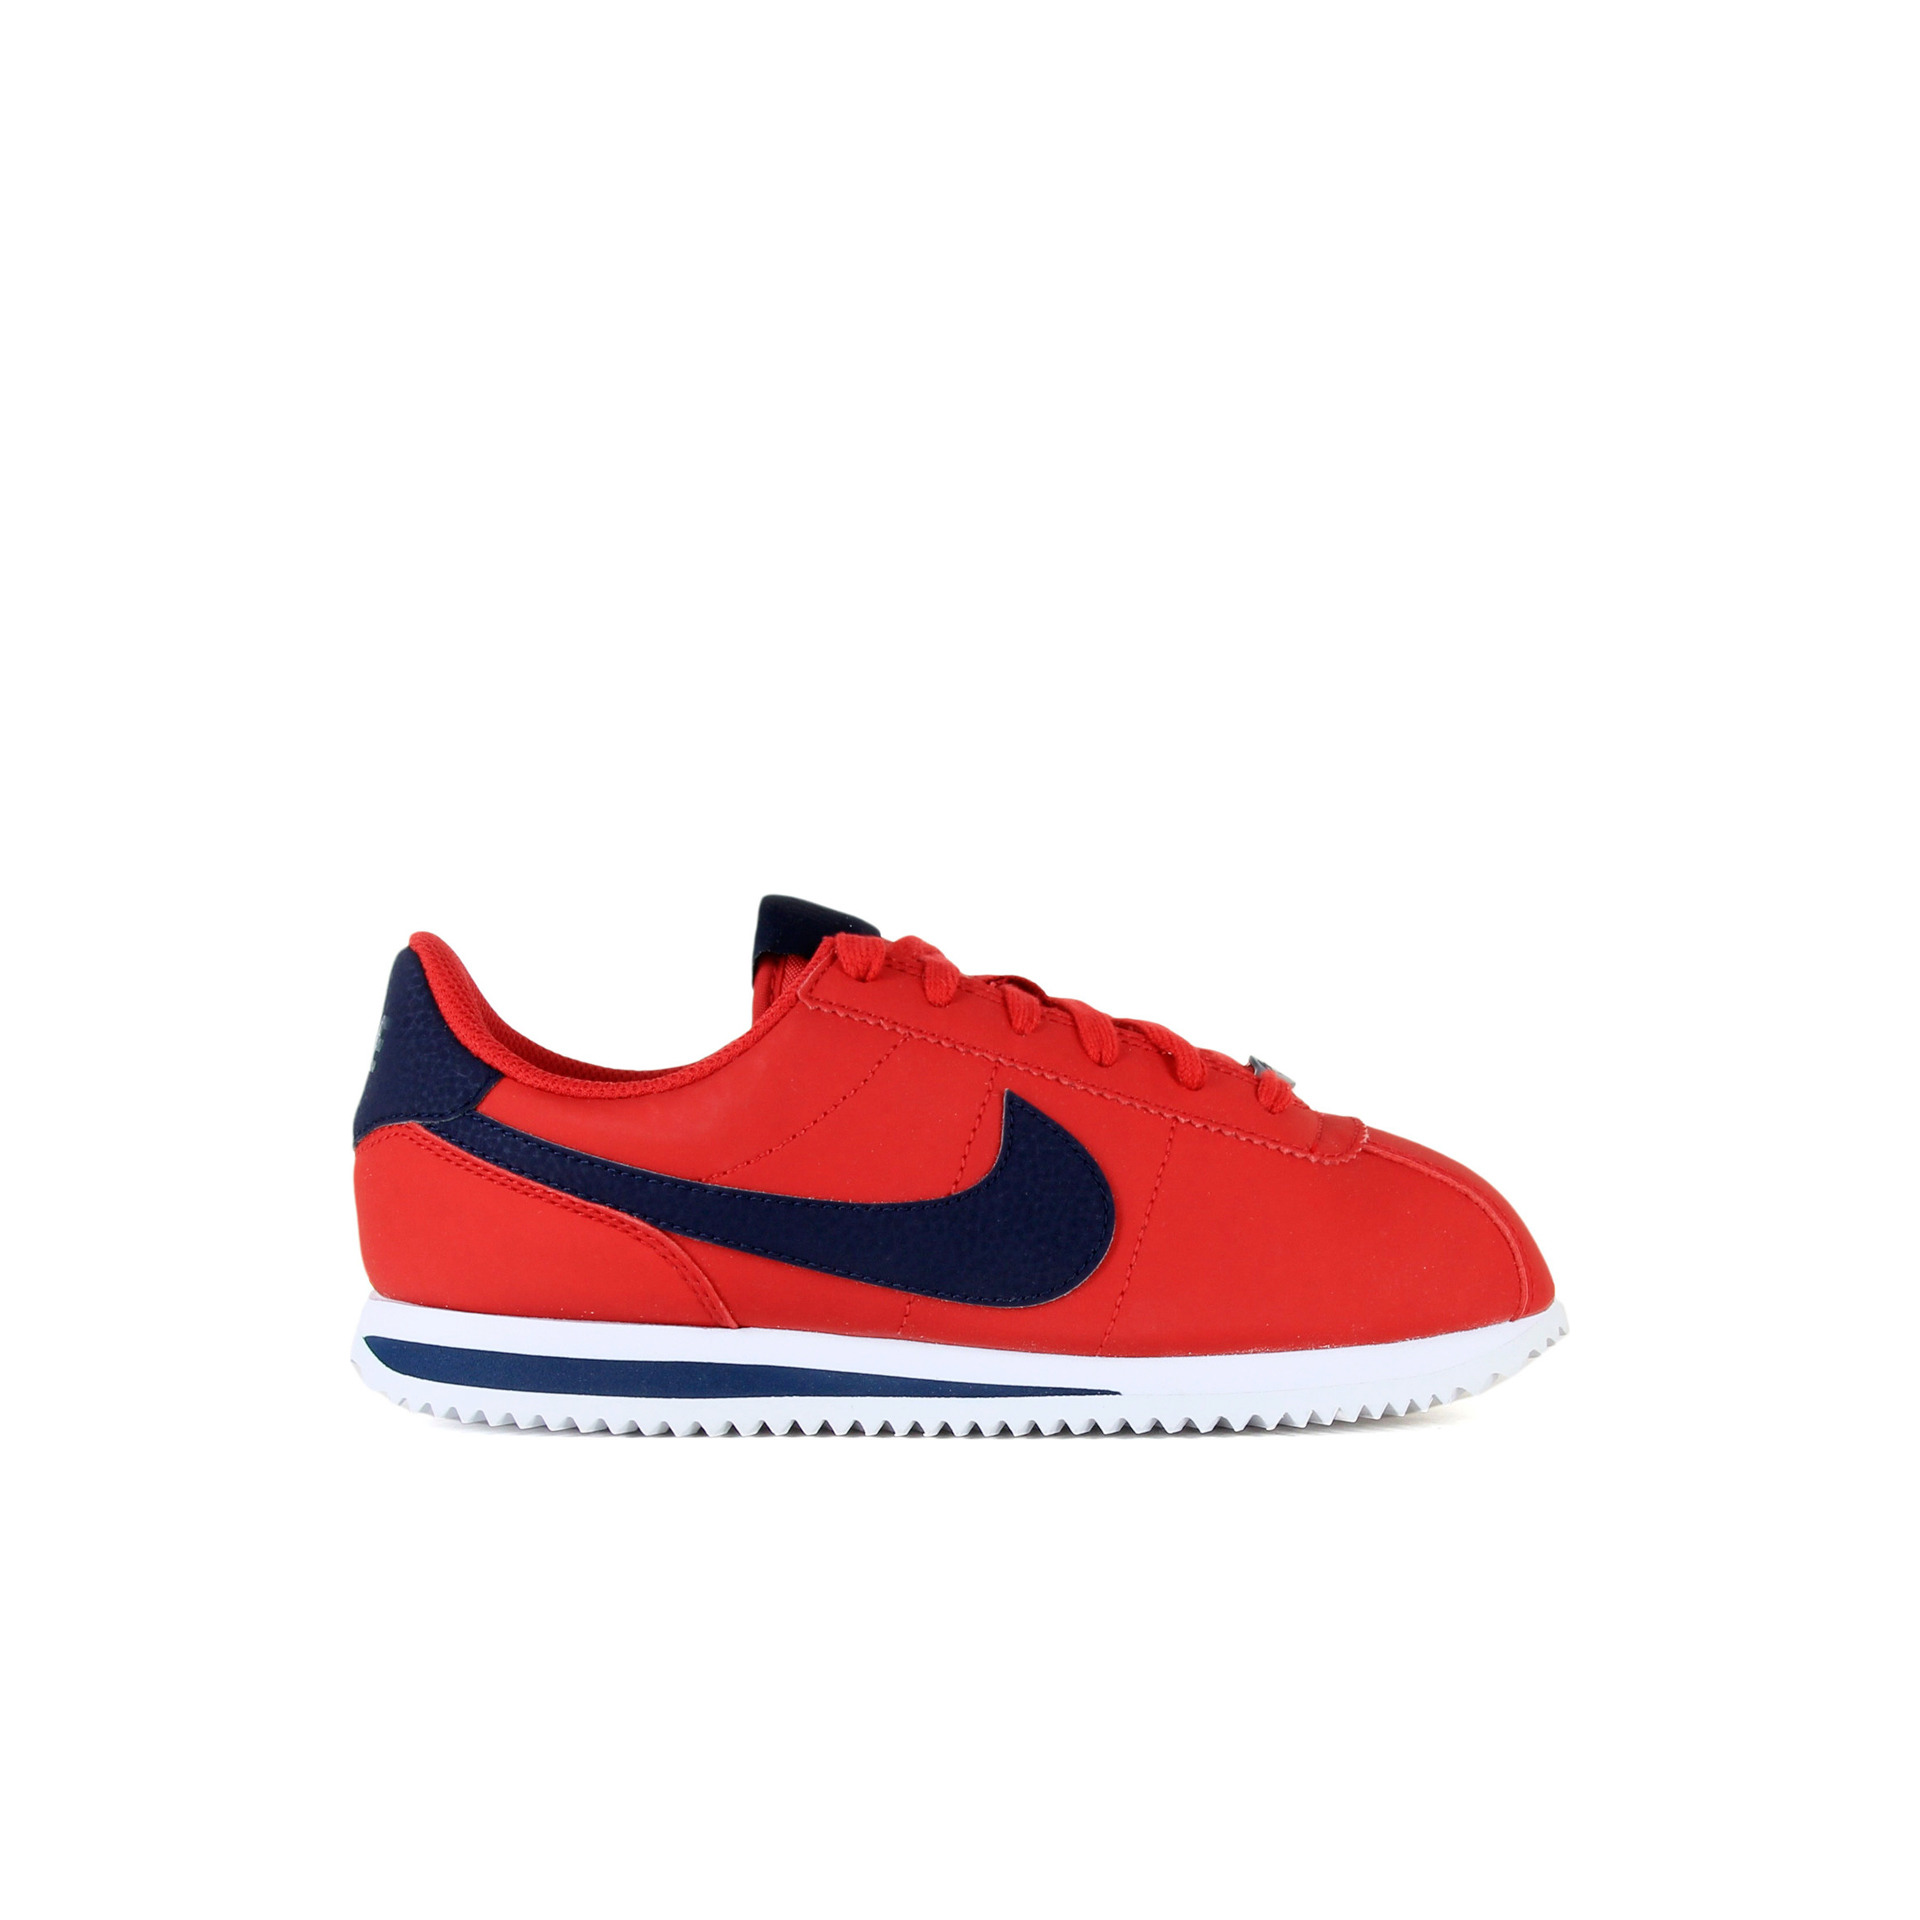 Nike Cortez rojo zapatillas niños/as tallas 28-38.5 | Dooers Sneakers